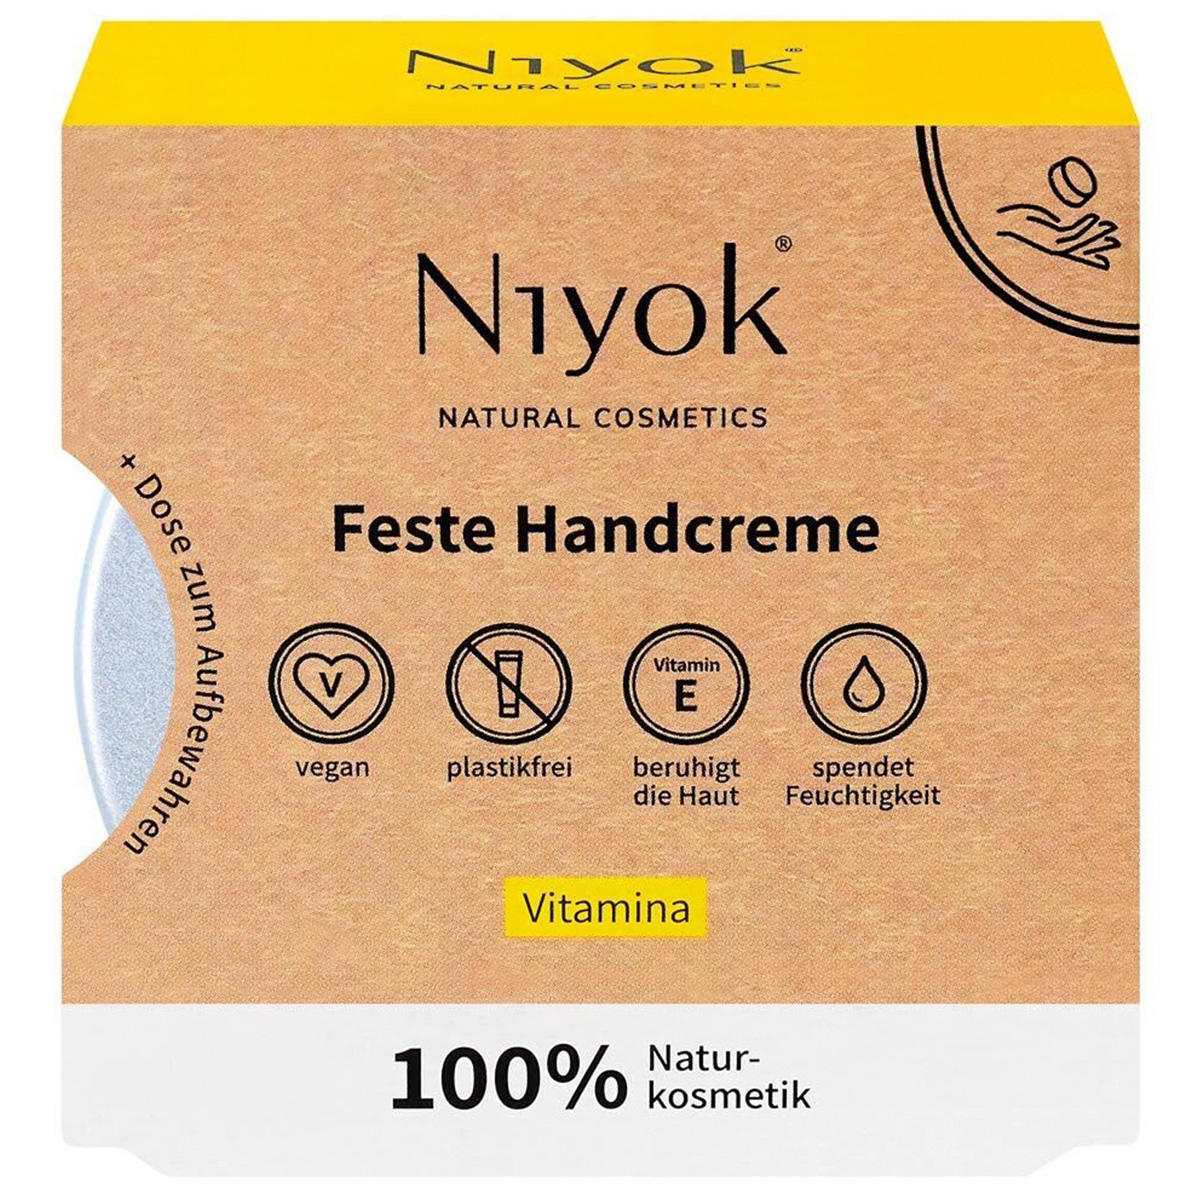 Niyok Feste Handcreme Vitamina 50 g - 1